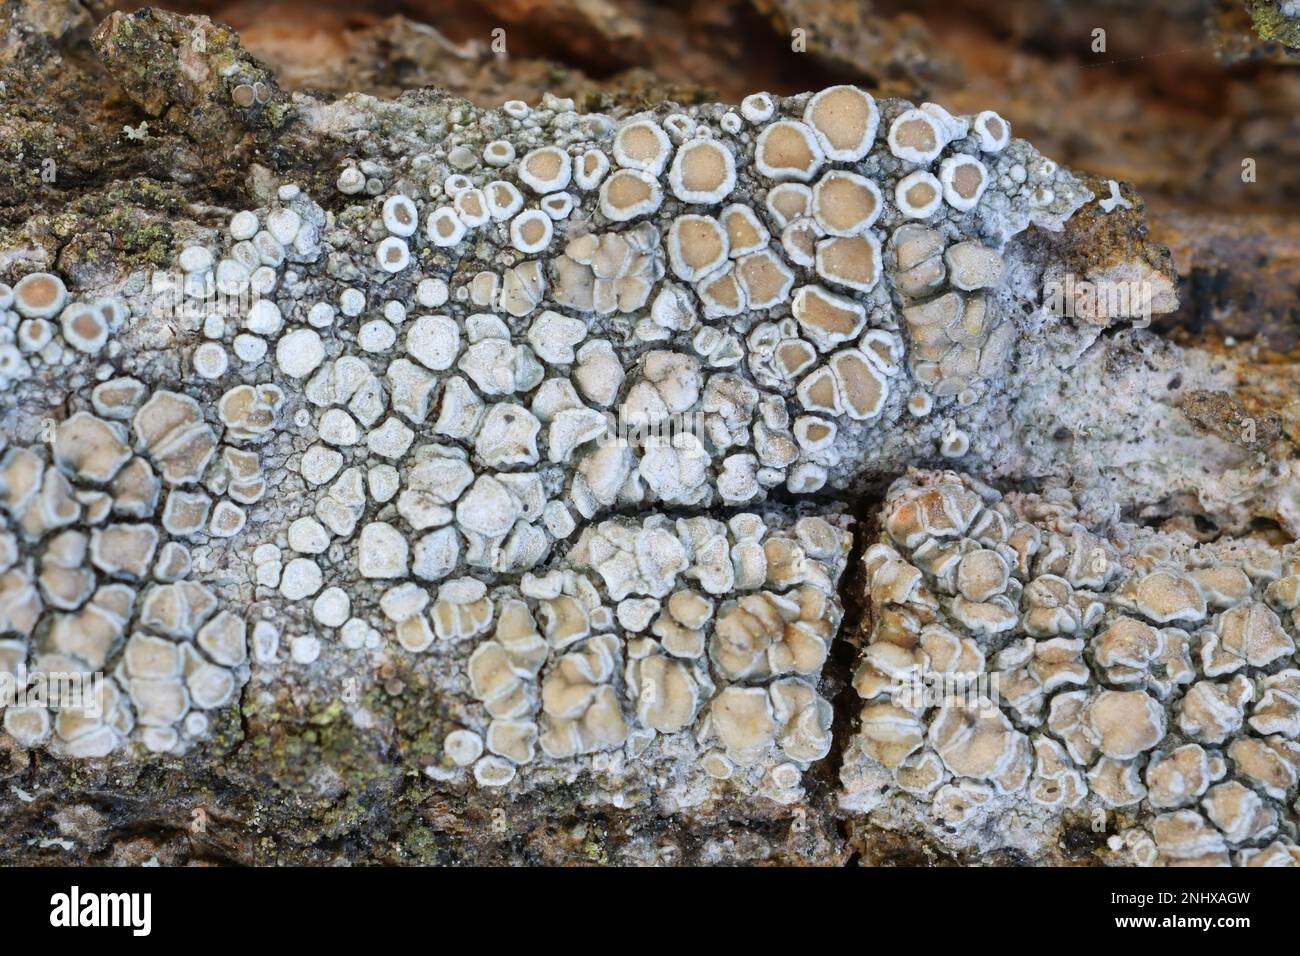 Lecanora chlarotera, conosciuta come lichene bruno di bordo, che cresce sull'acero norvegese in Finlandia Foto Stock